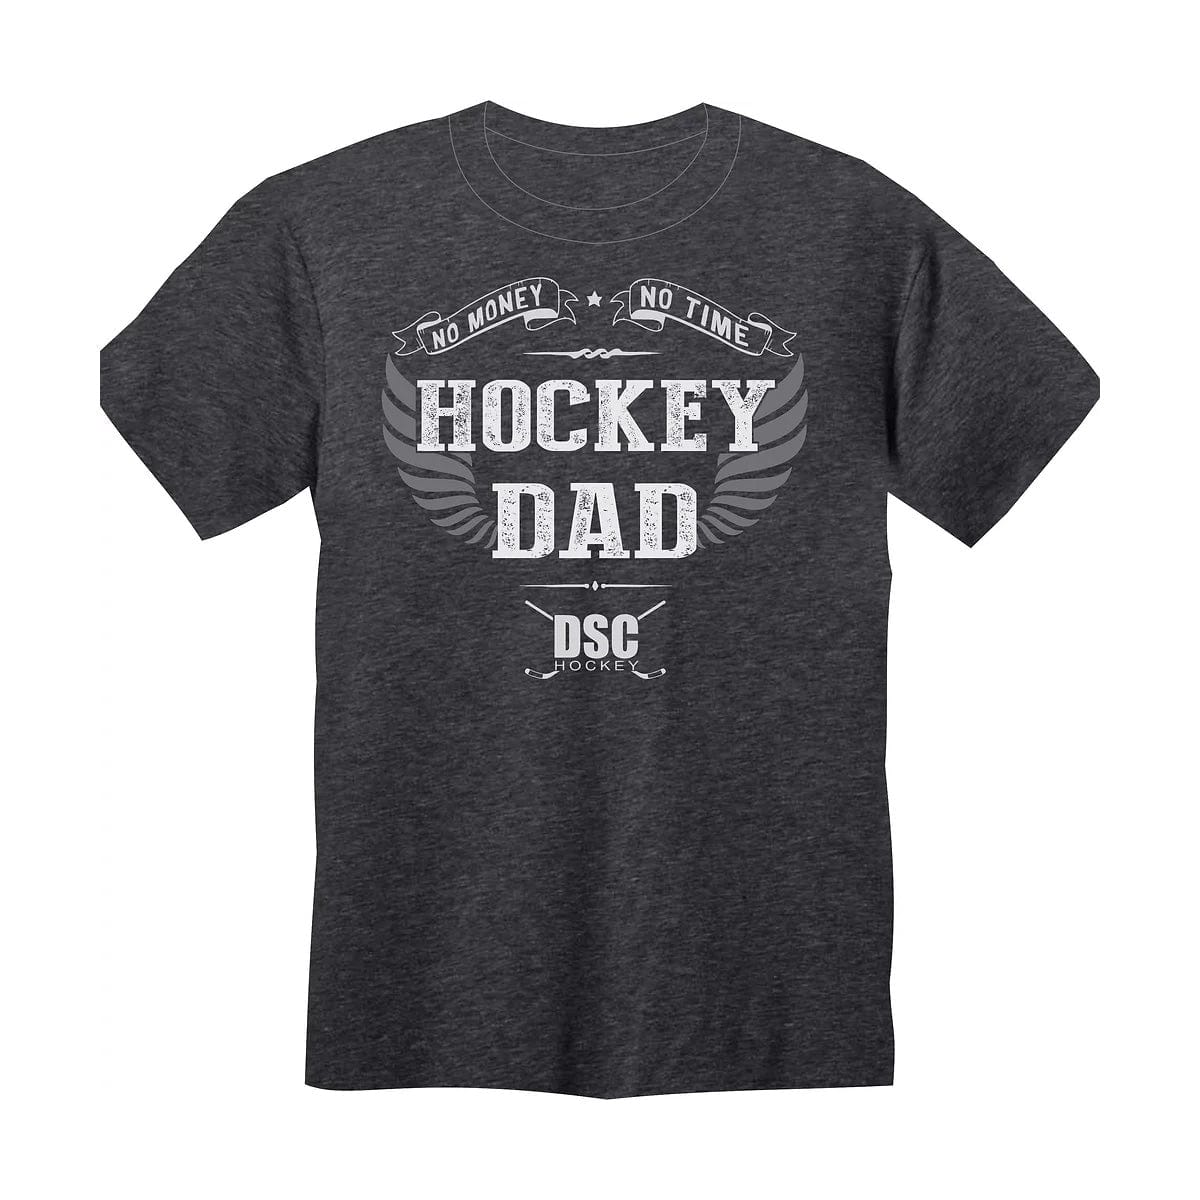 NHL Men's T-Shirt - Black - XL